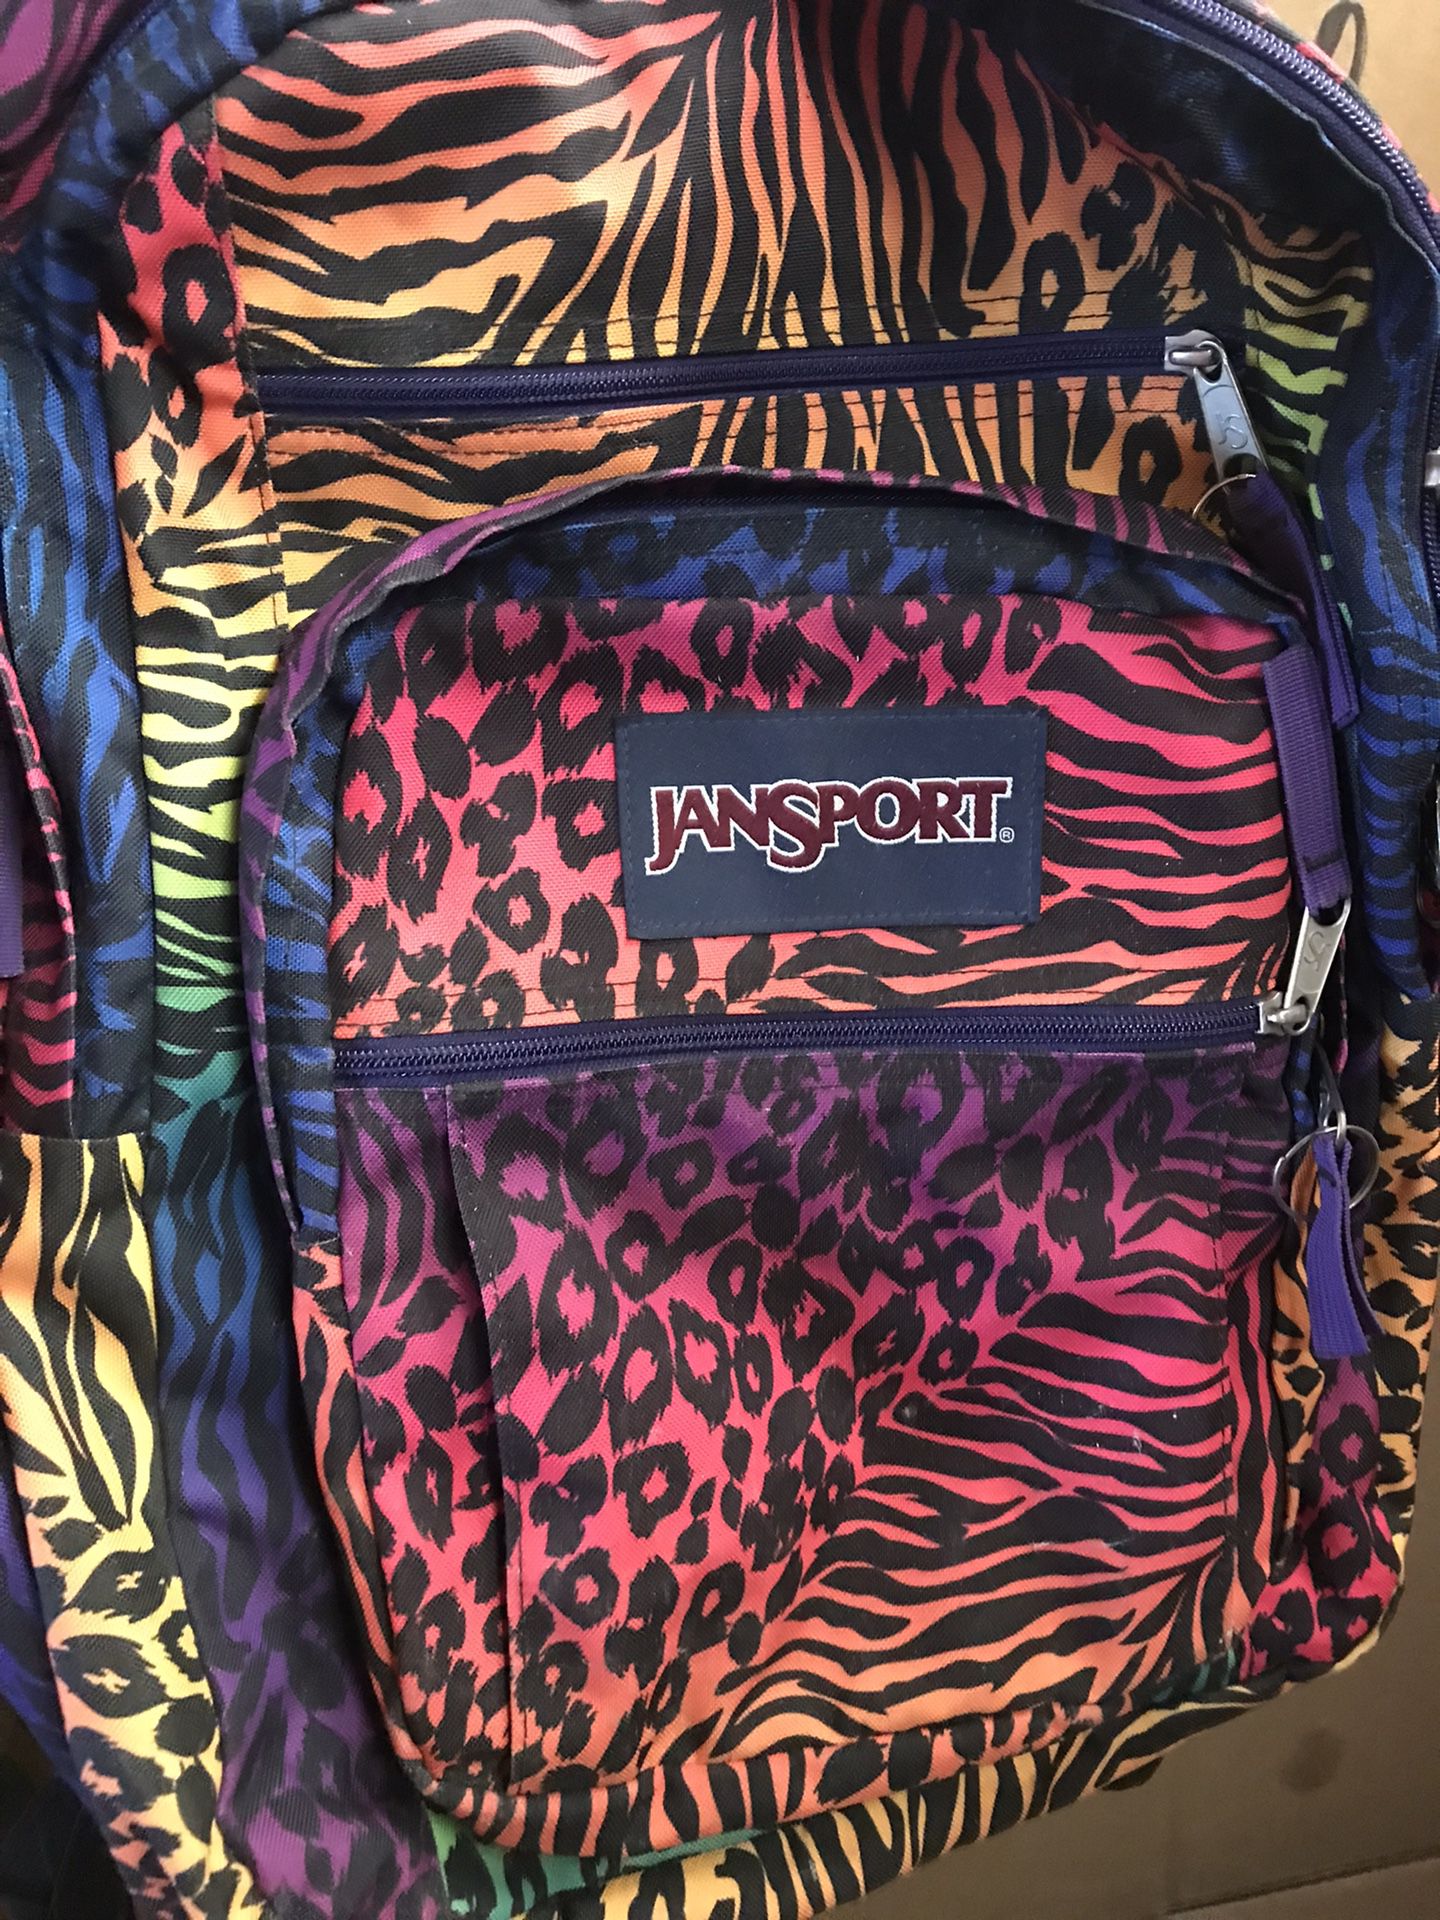 JANSPORT Backpack $20